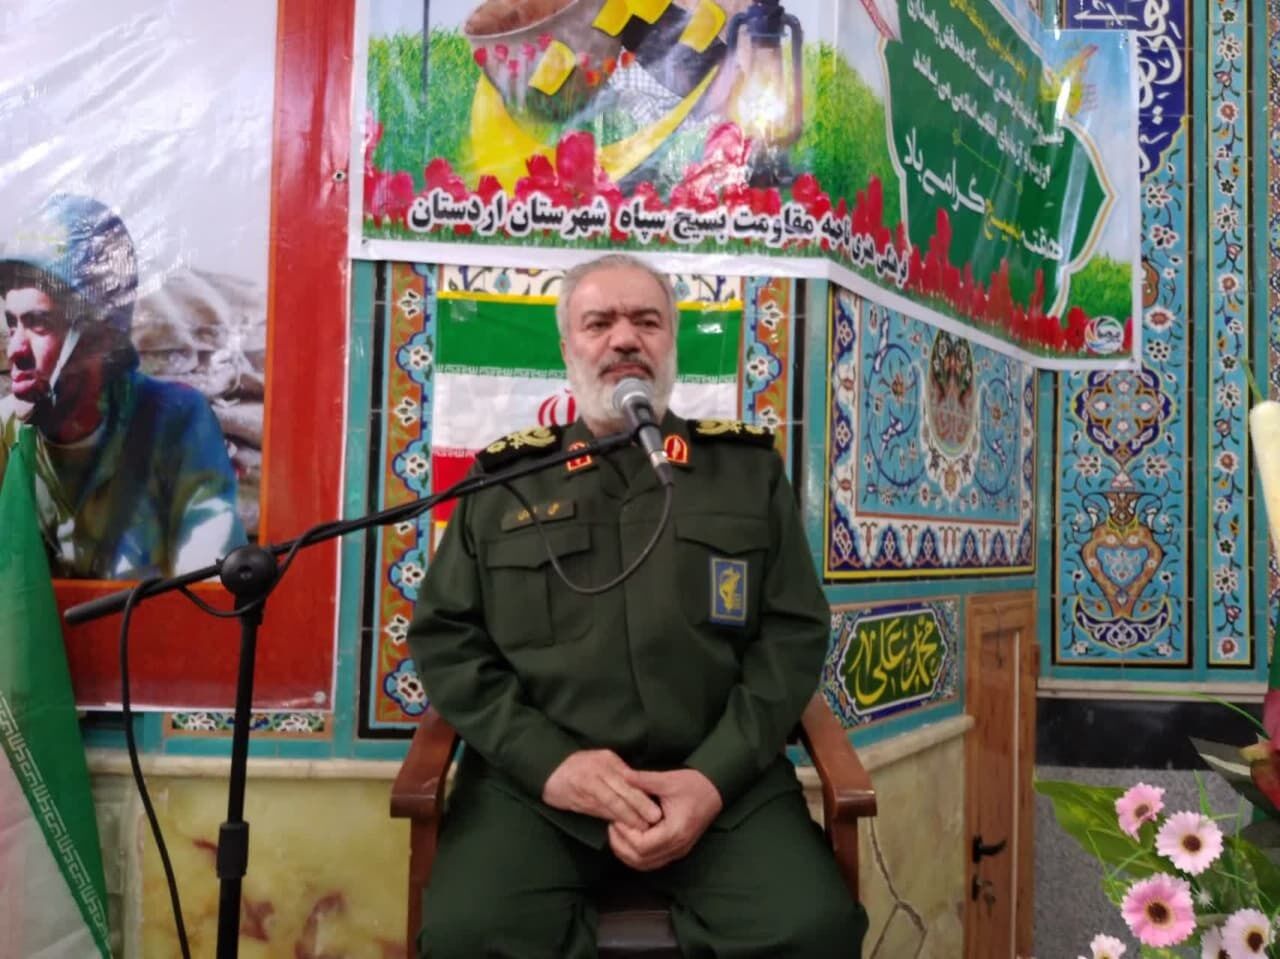 Les Etats-Unis n'ose pas affronter l'Iran (Général de brigade Fadawi)